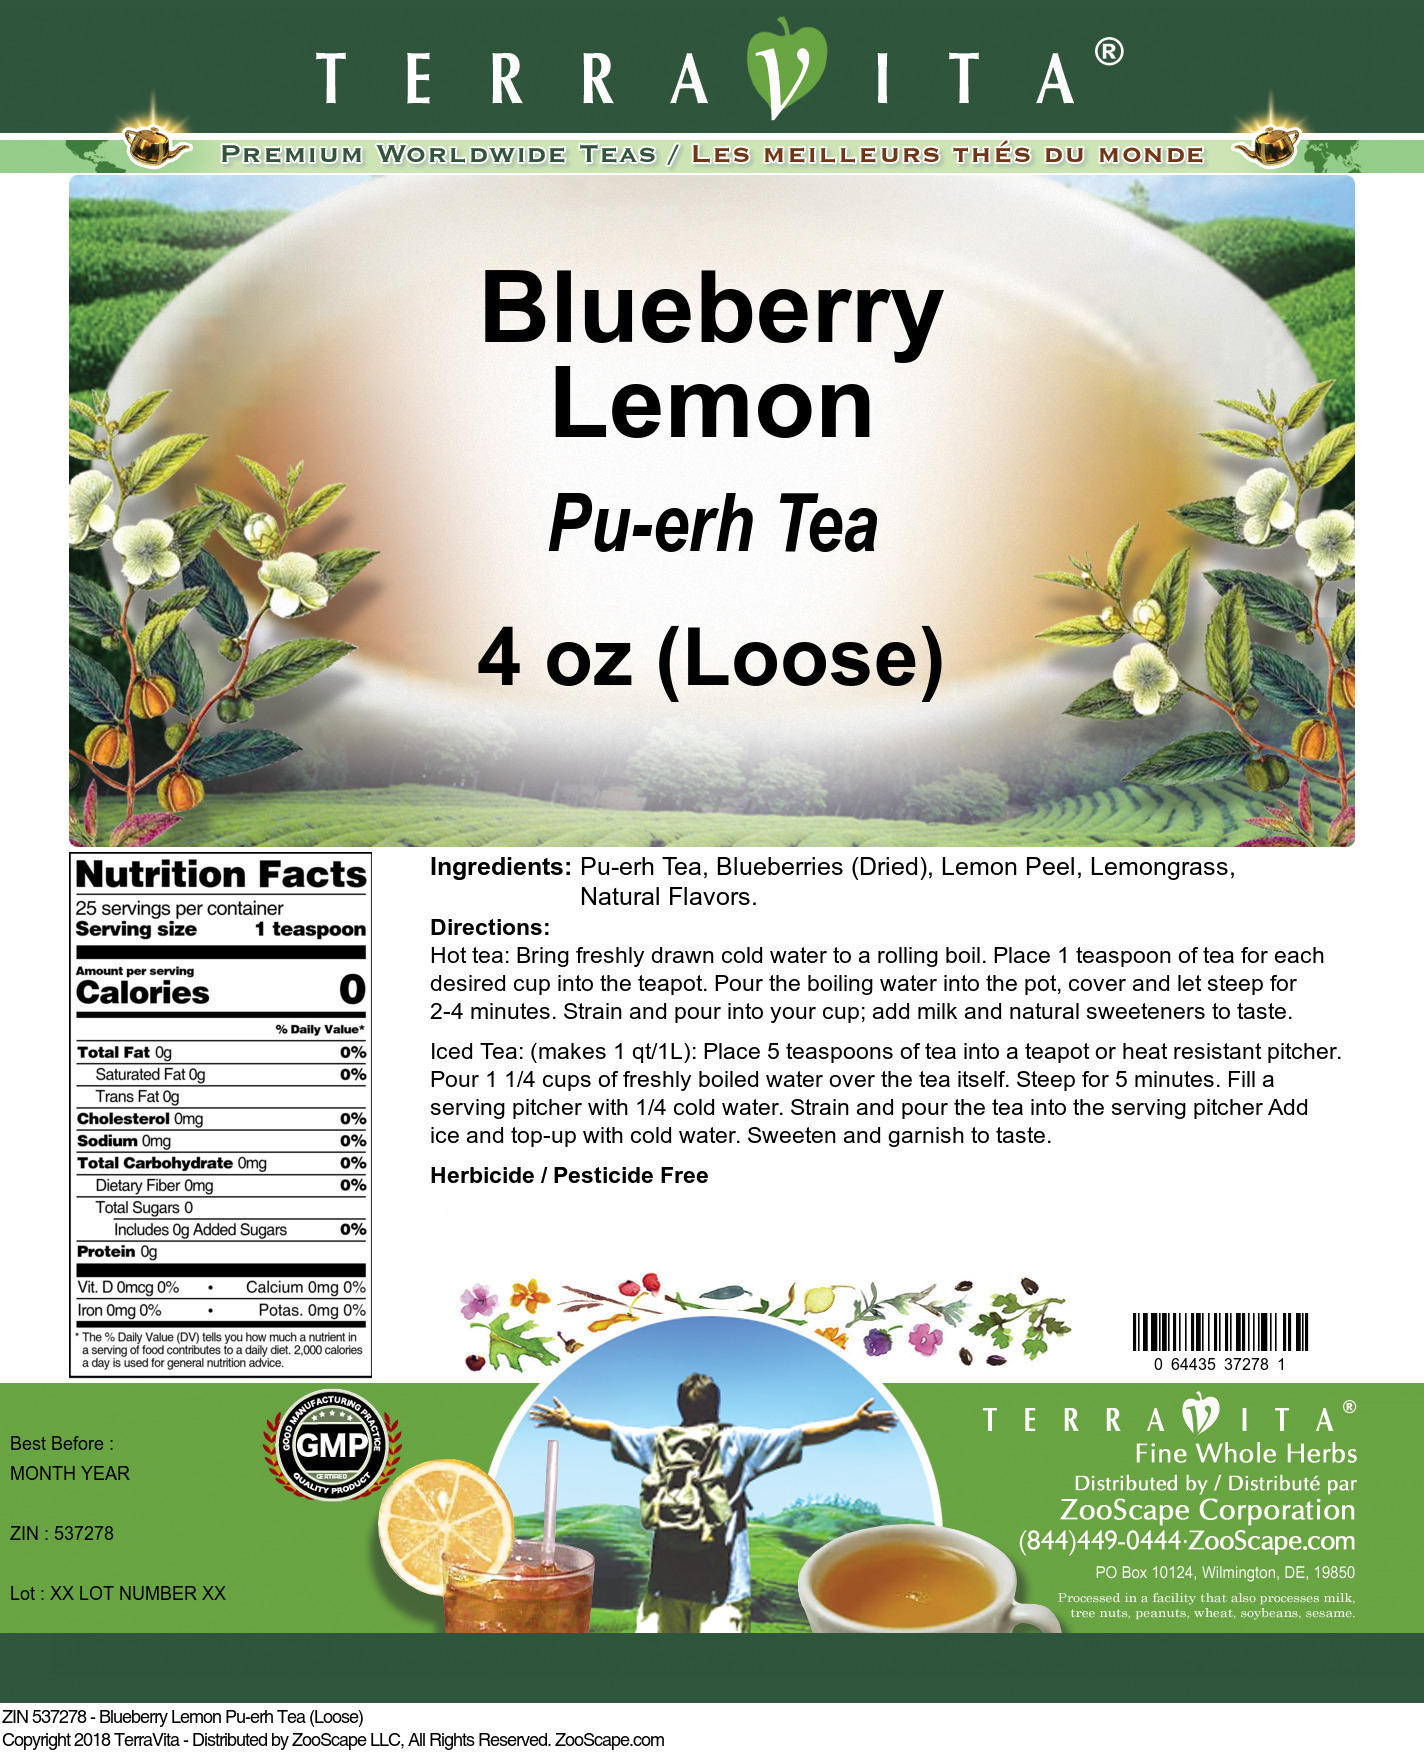 Blueberry Lemon Pu-erh Tea (Loose) - Label